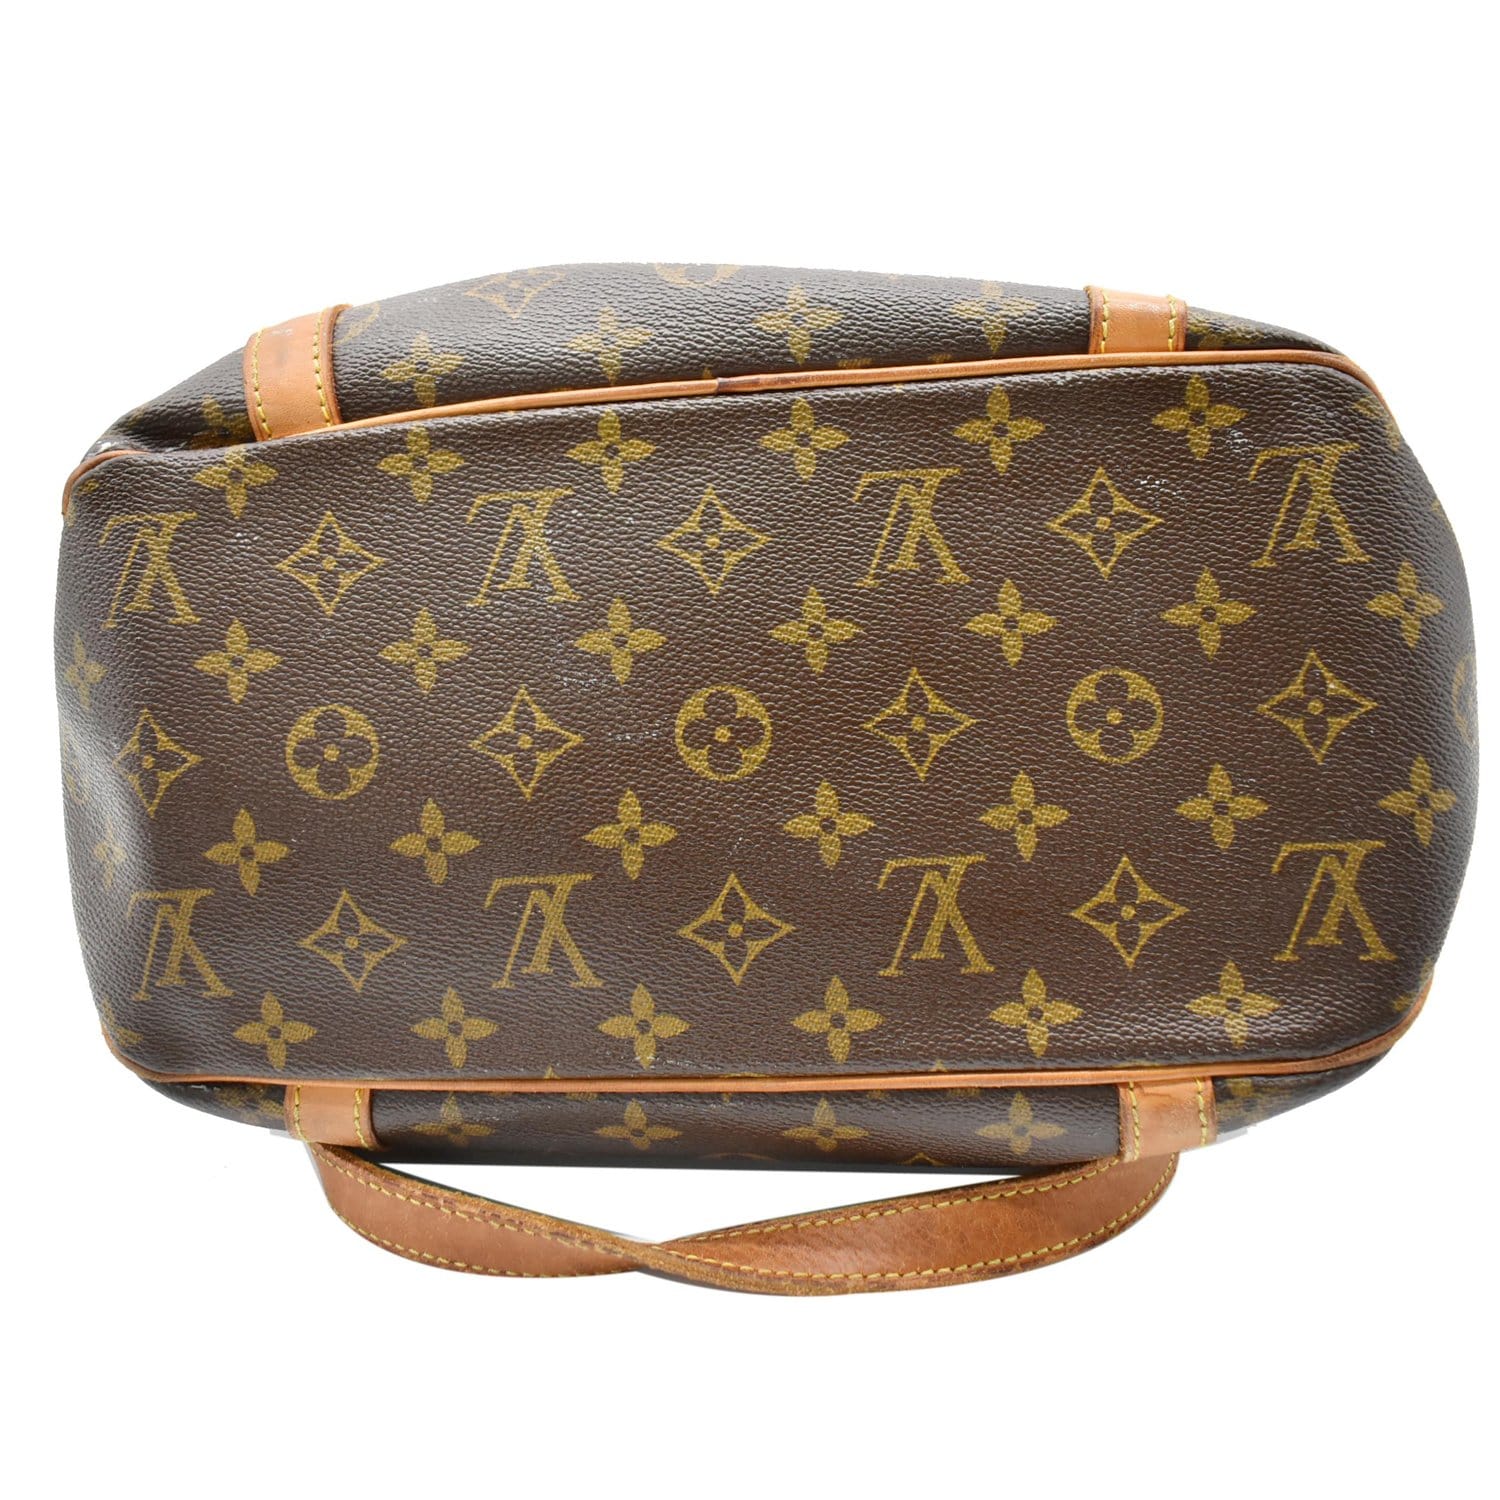 Louis Vuitton Monogram Sac Shopping GM Tote Bag 71lv218s at